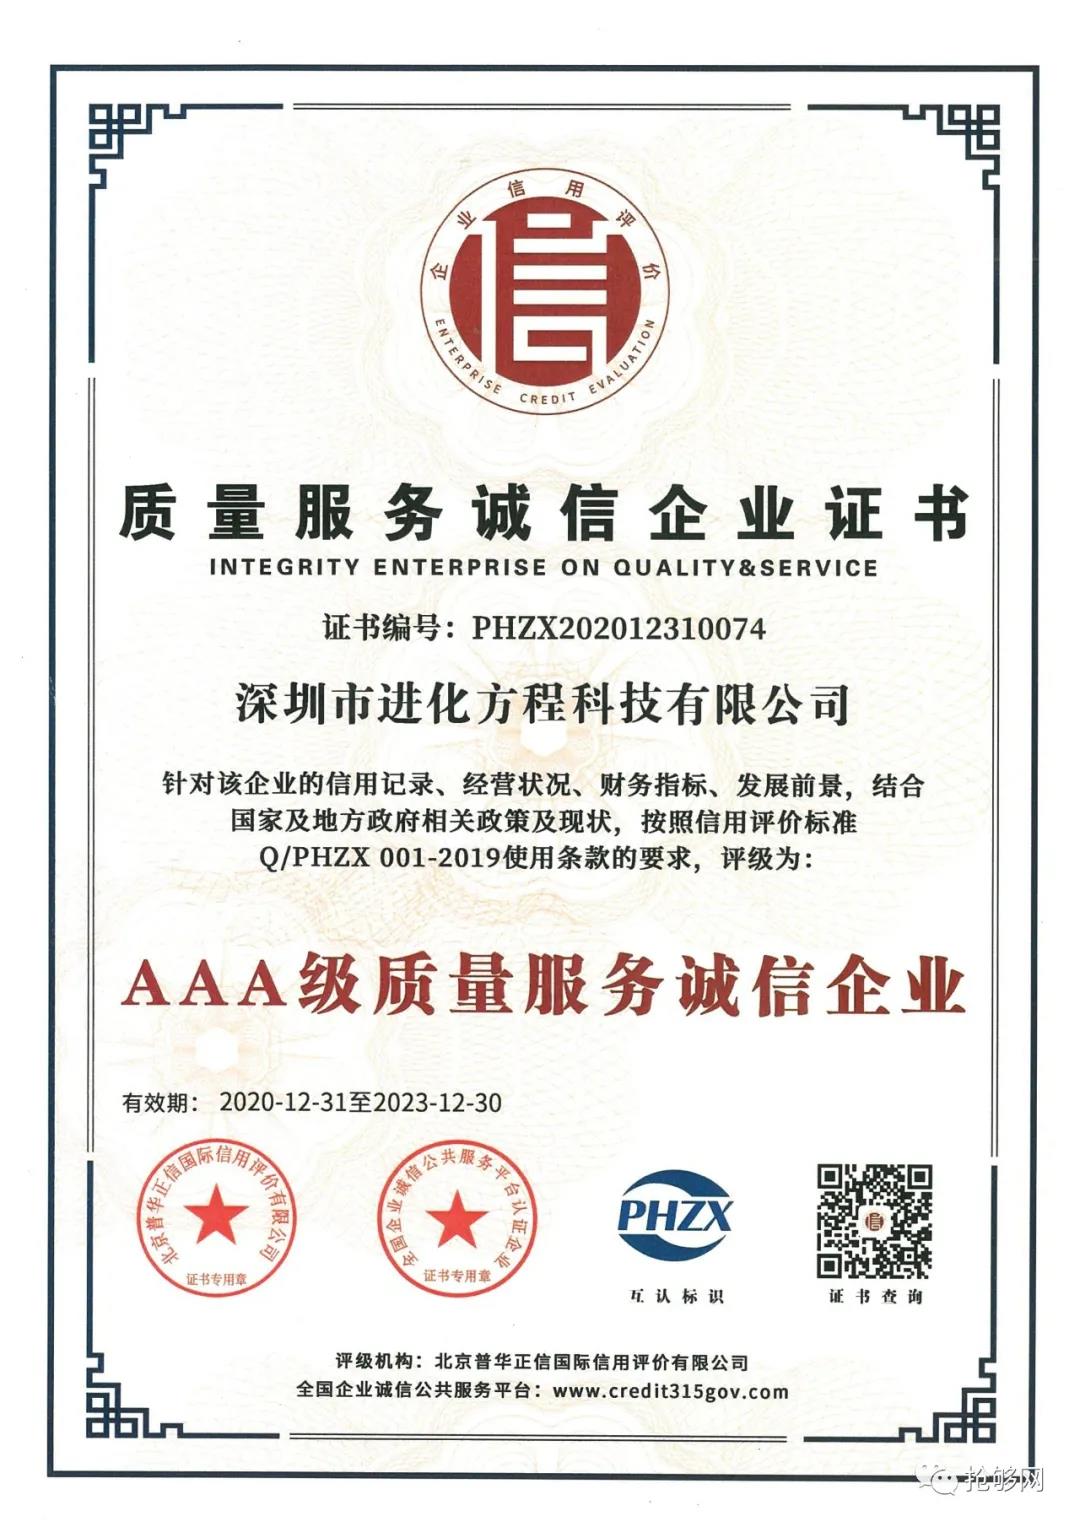 喜讯!深圳市进化方程科技有限公司获官方认证,授予aaa级信用等级证书